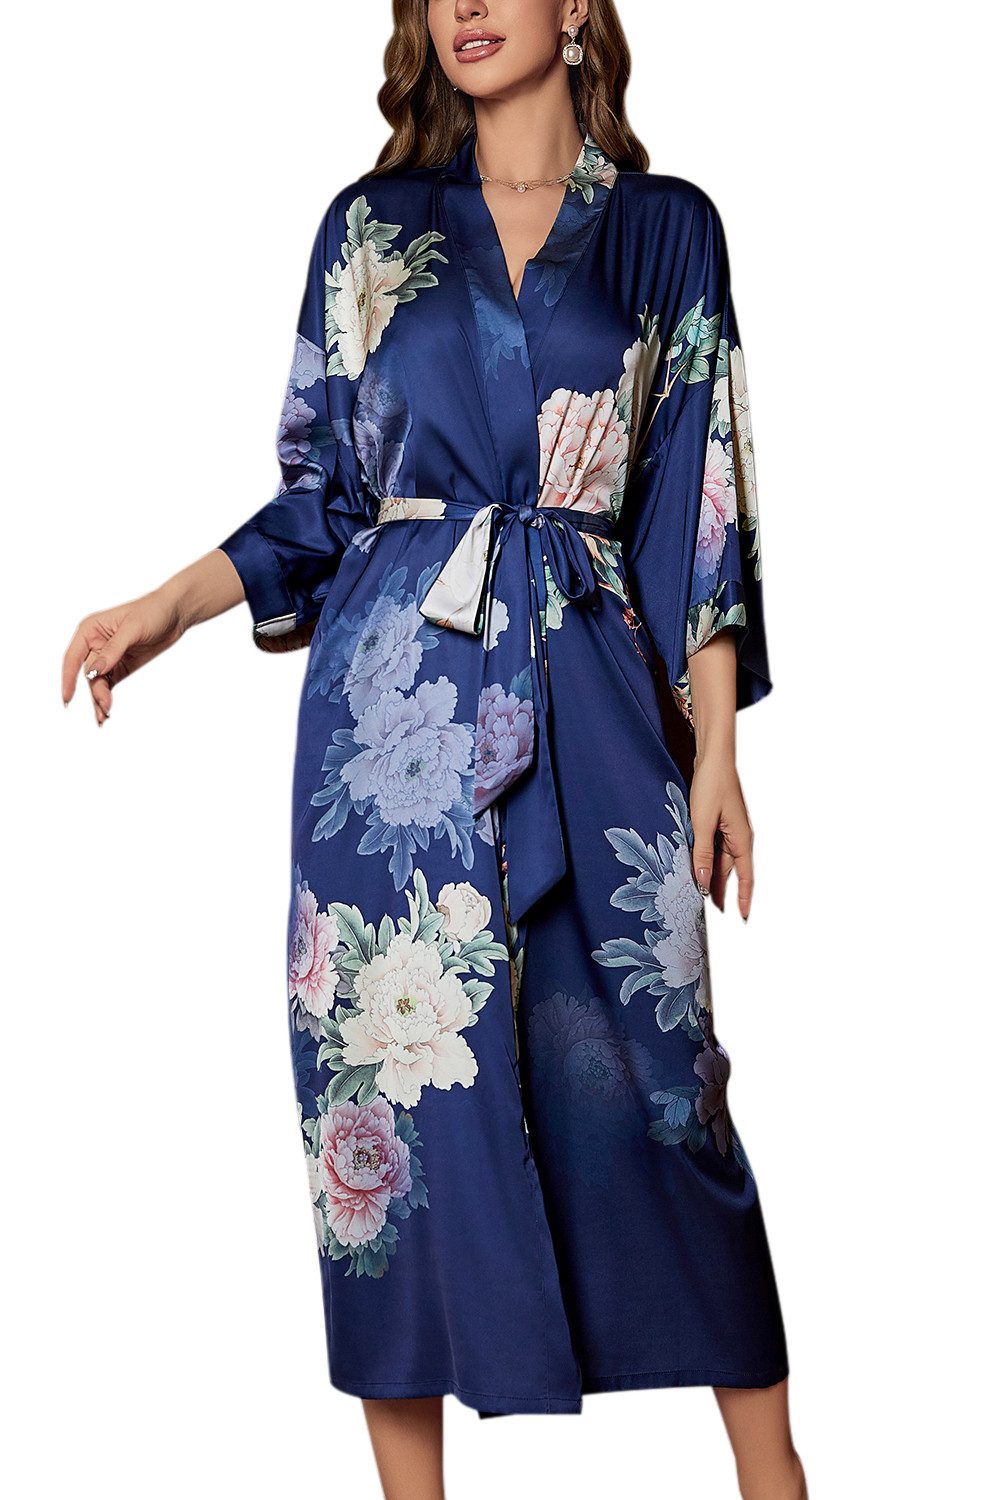 B.X Morgenmantel Lässiger langärmliger Morgenmantel aus Satin mit Blumendruck, Kimonokragen, Stilvoller luxuriöser Damen-Kimono zum Schnüren